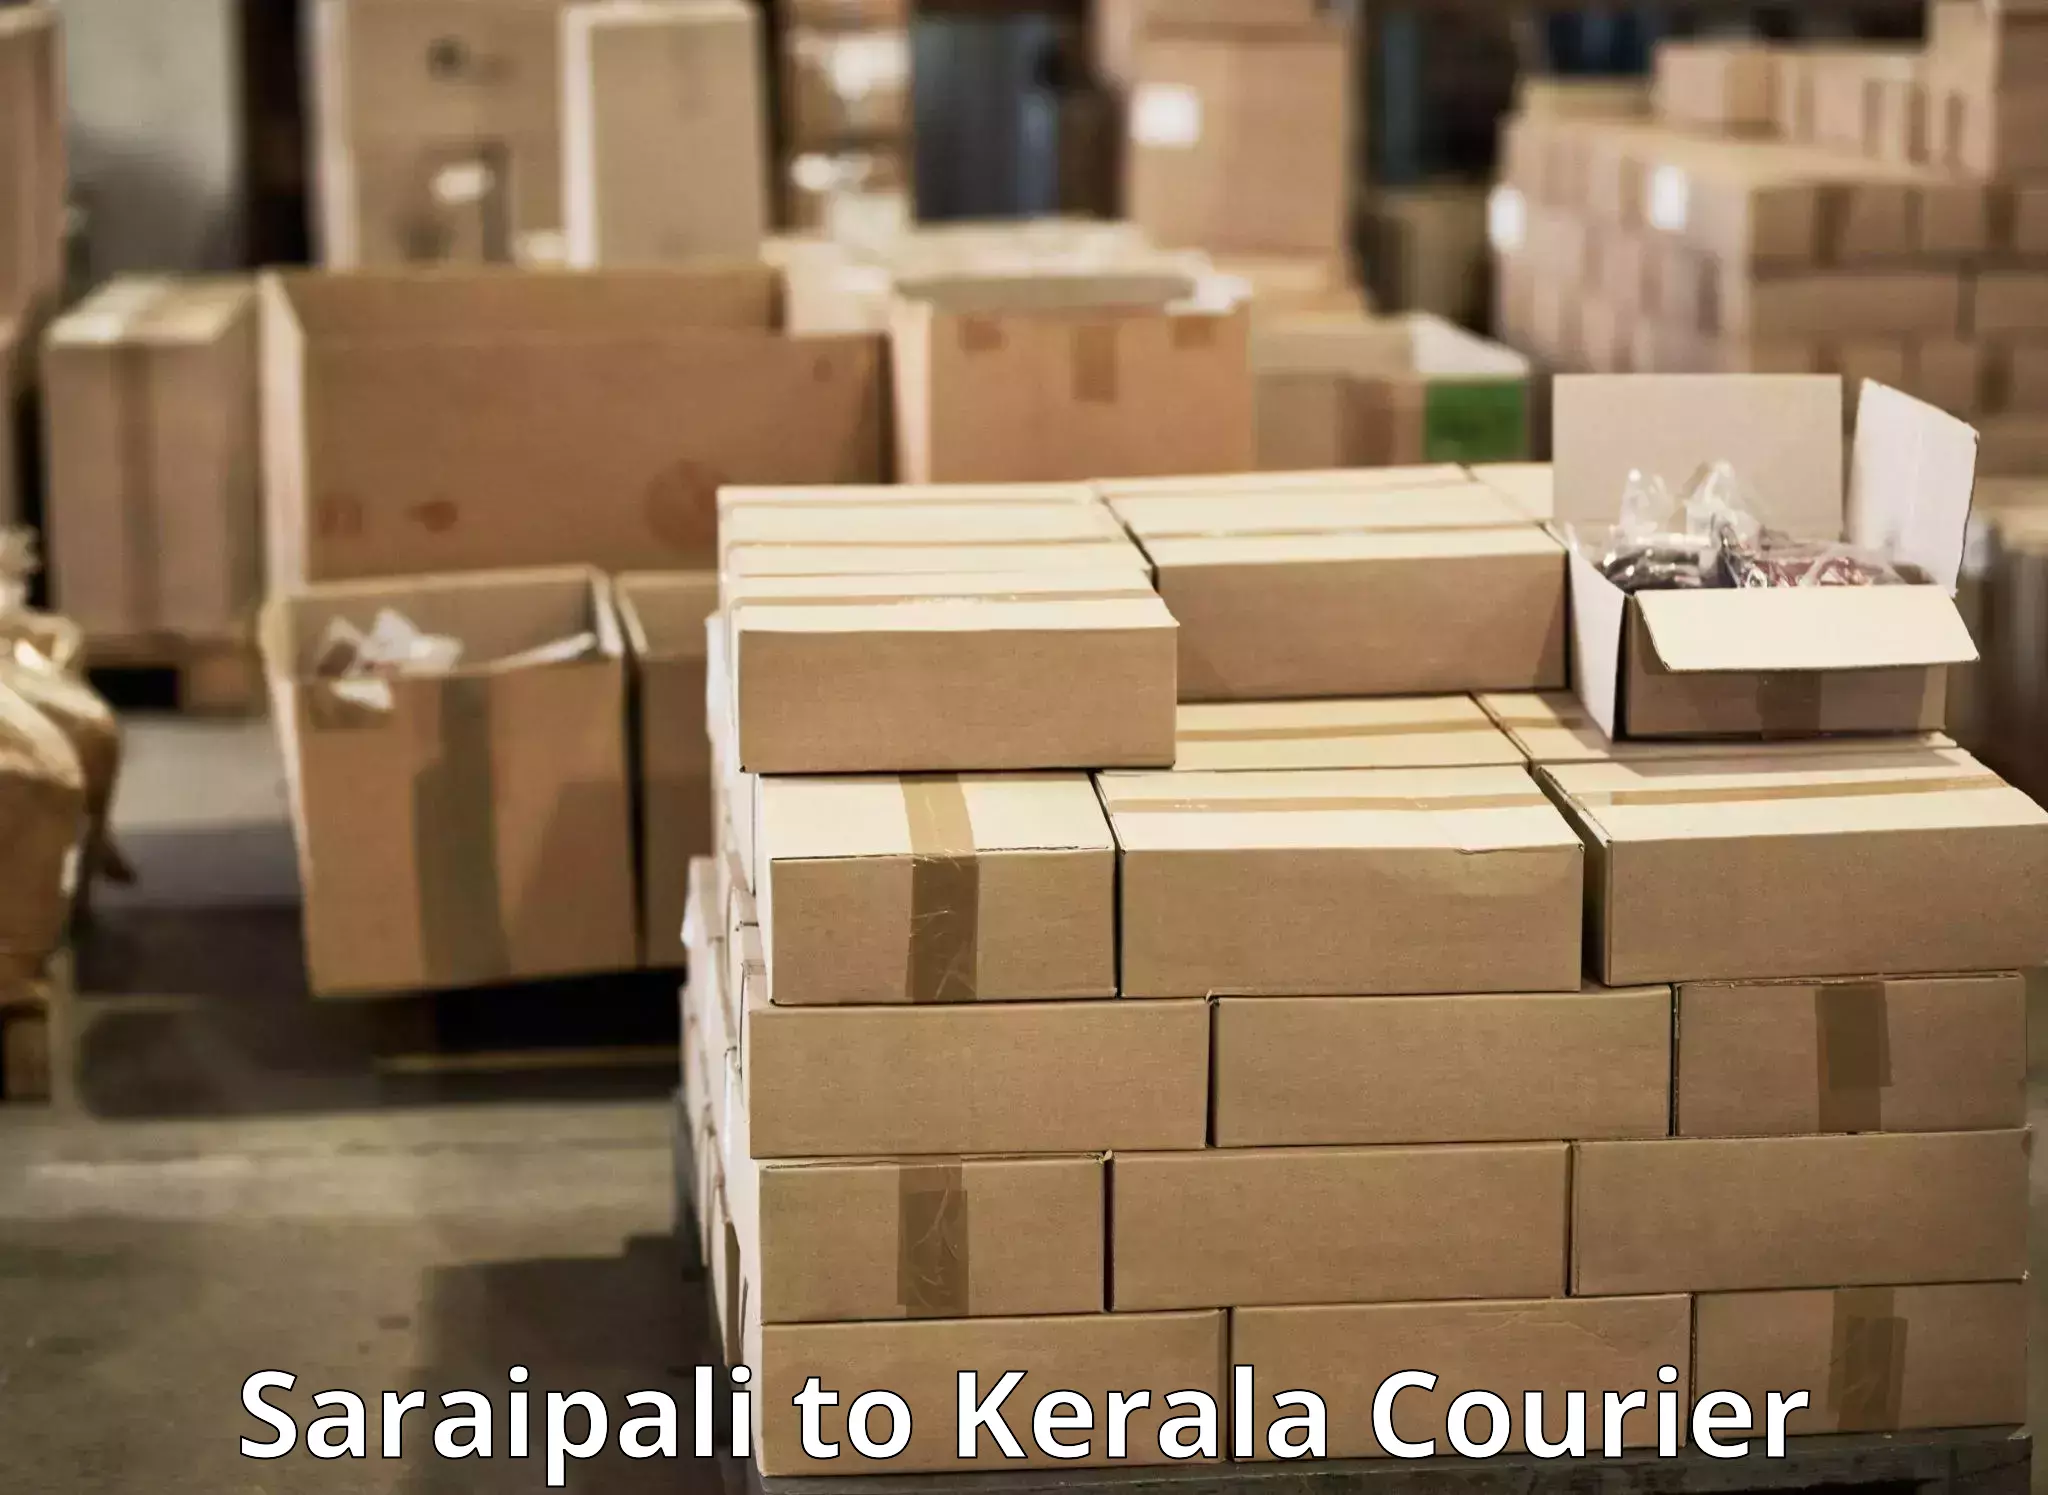 Premium courier services Saraipali to Kerala